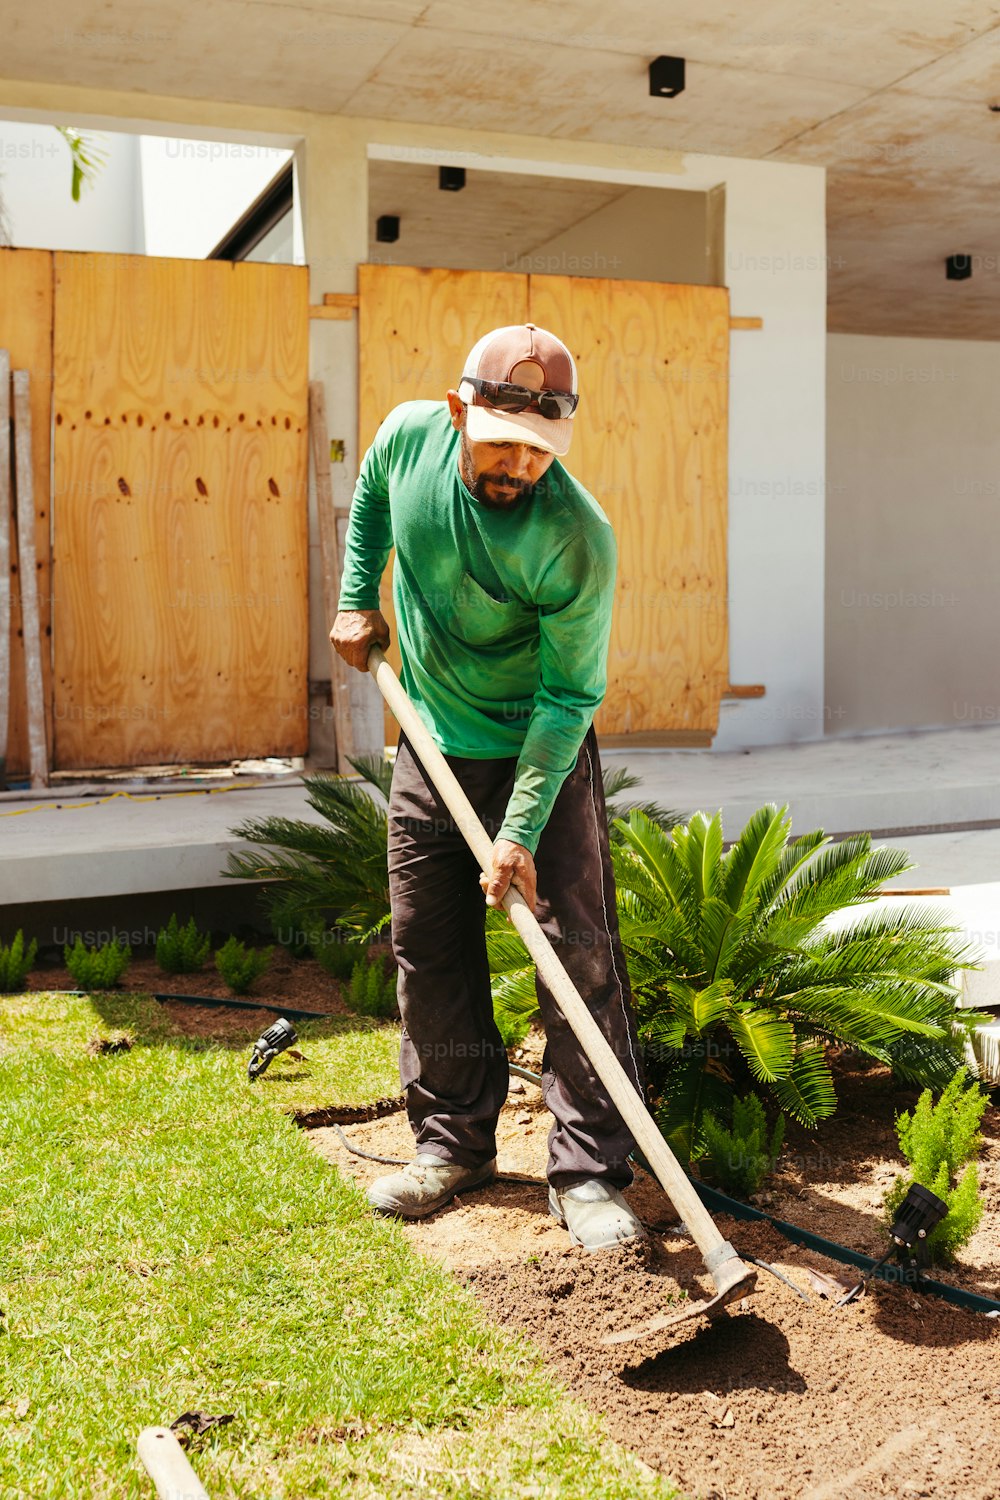 a man in a green shirt is using a shovel